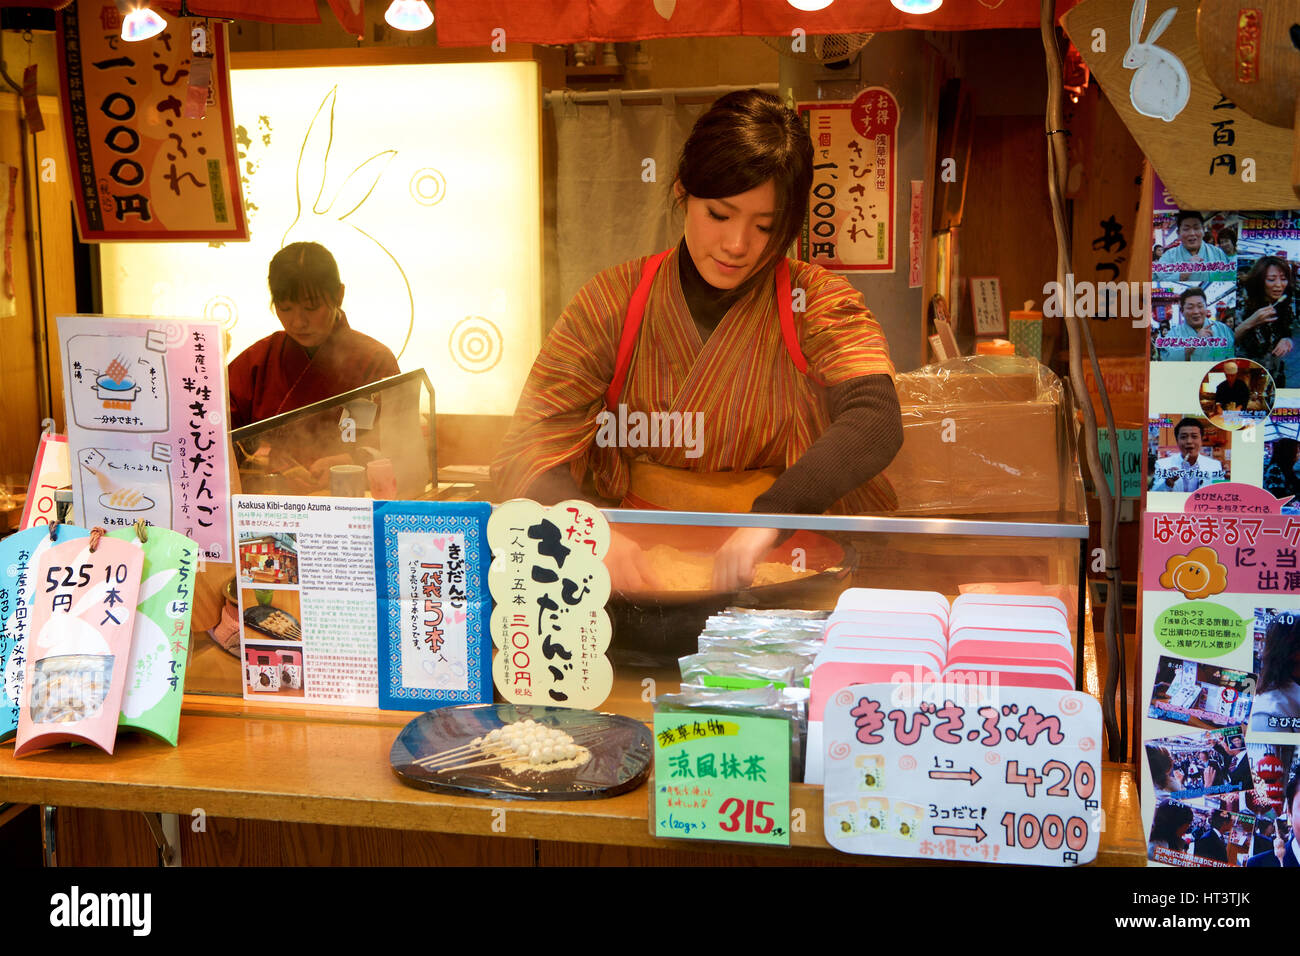 Sensoji di Asakusa tempio buddista, Tokyo, Giappone.giovane donna in abito tradizionale prepara il cibo in una fase di stallo. Foto Stock